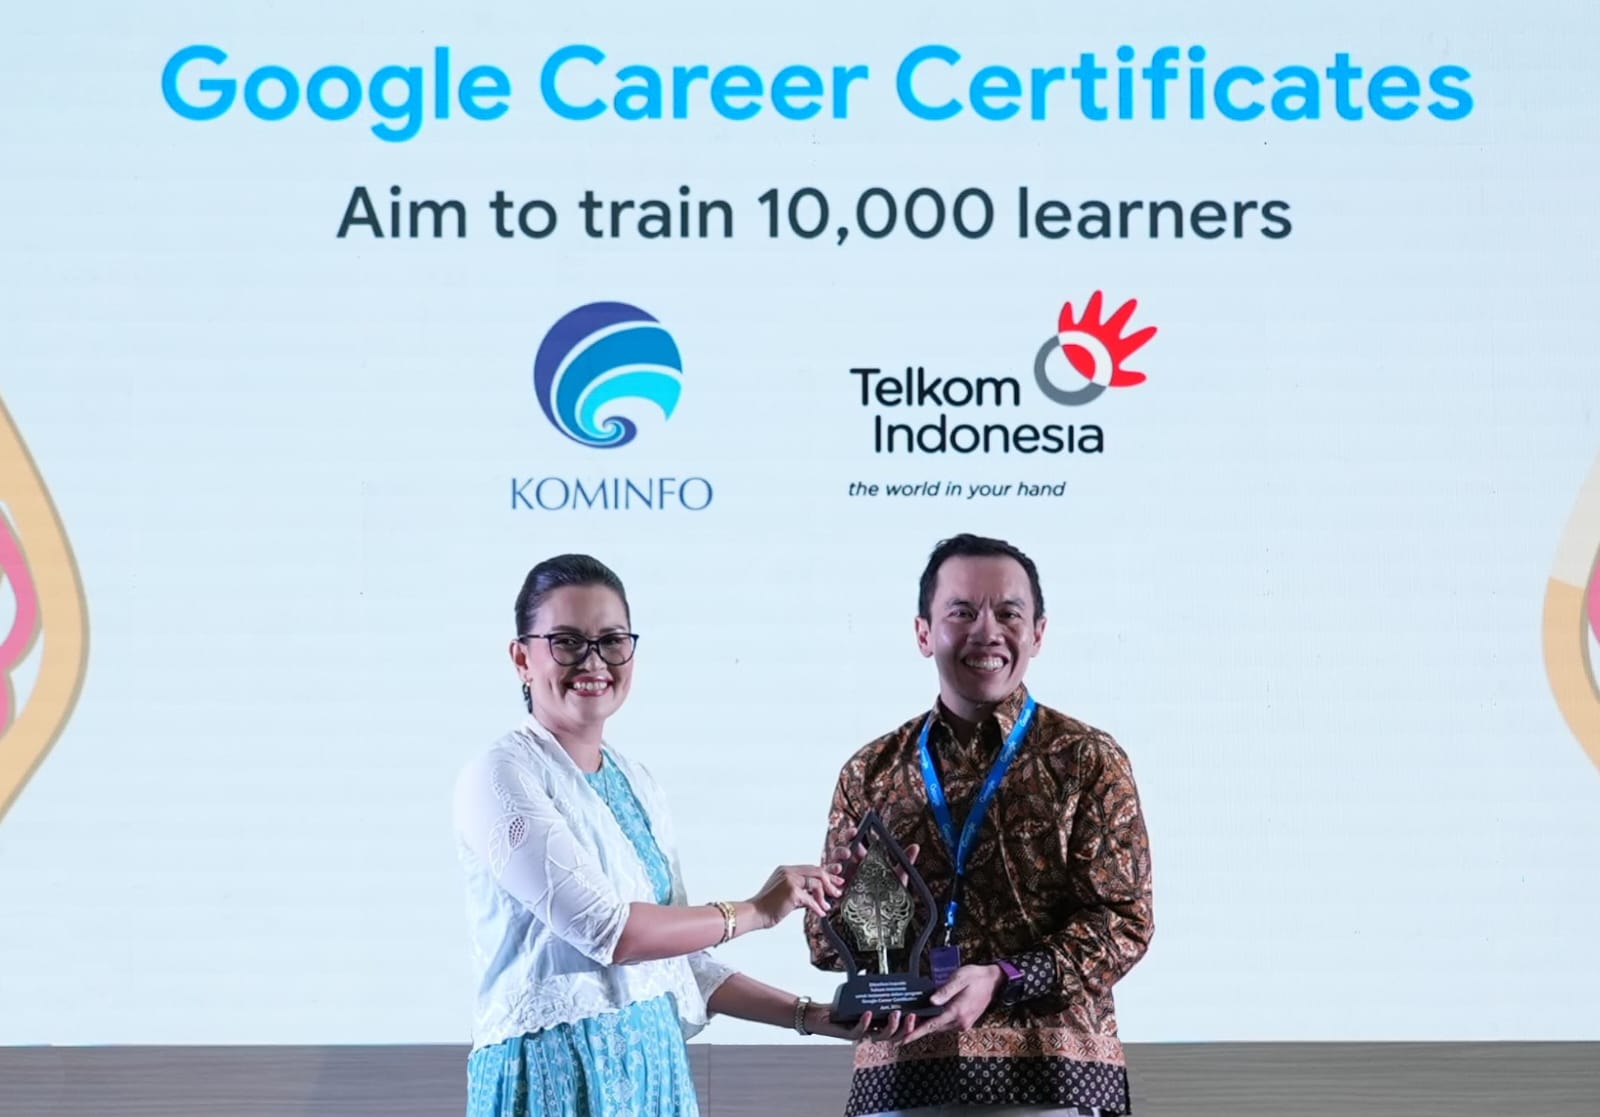 Direktur Digital Business Telkom Fajrin Rasyid (kanan) menerima cindera mata dari Direktur Hubungan Pemerintahan dan Kebijakan Publik Google Indonesia Putri Alam di Jakarta beberapa waktu lalu.